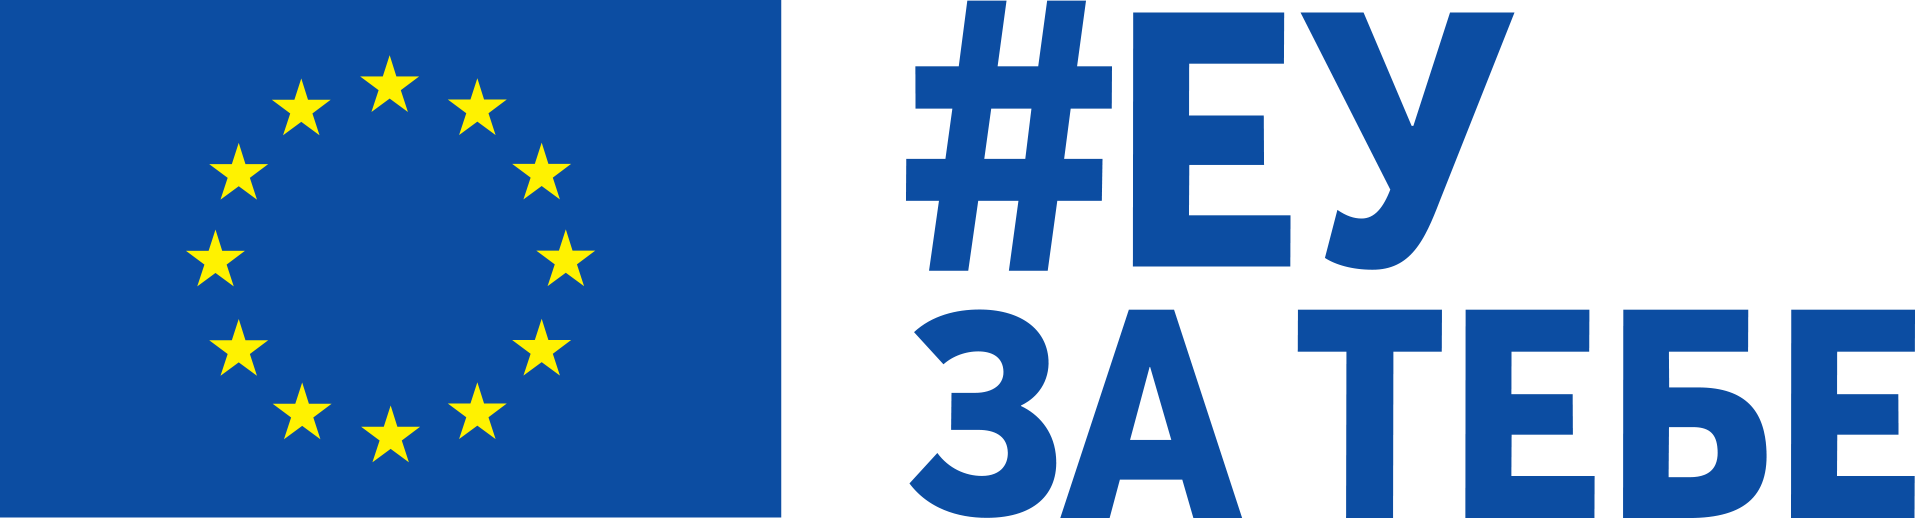 Logo EU za tebe